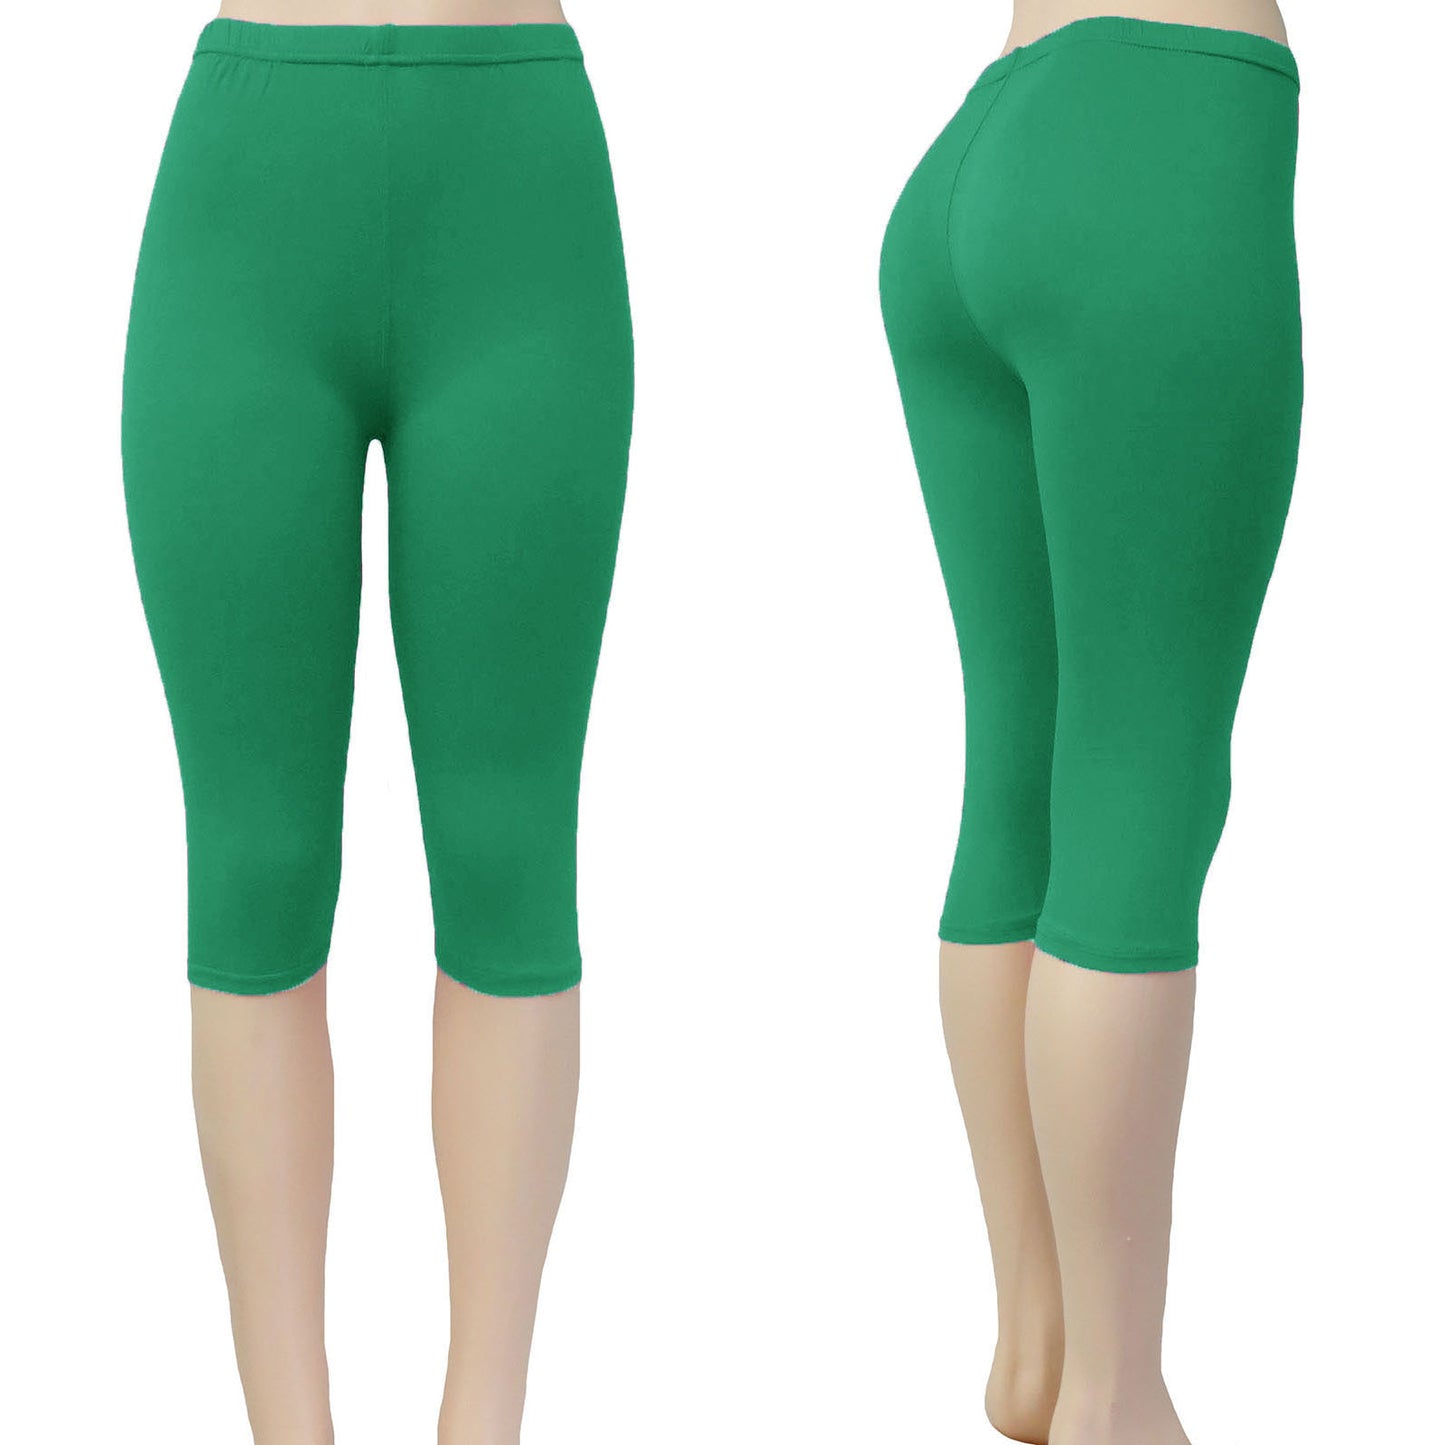 Alessa Vanessa Wholesale Solid Color Capri Leggings in Green